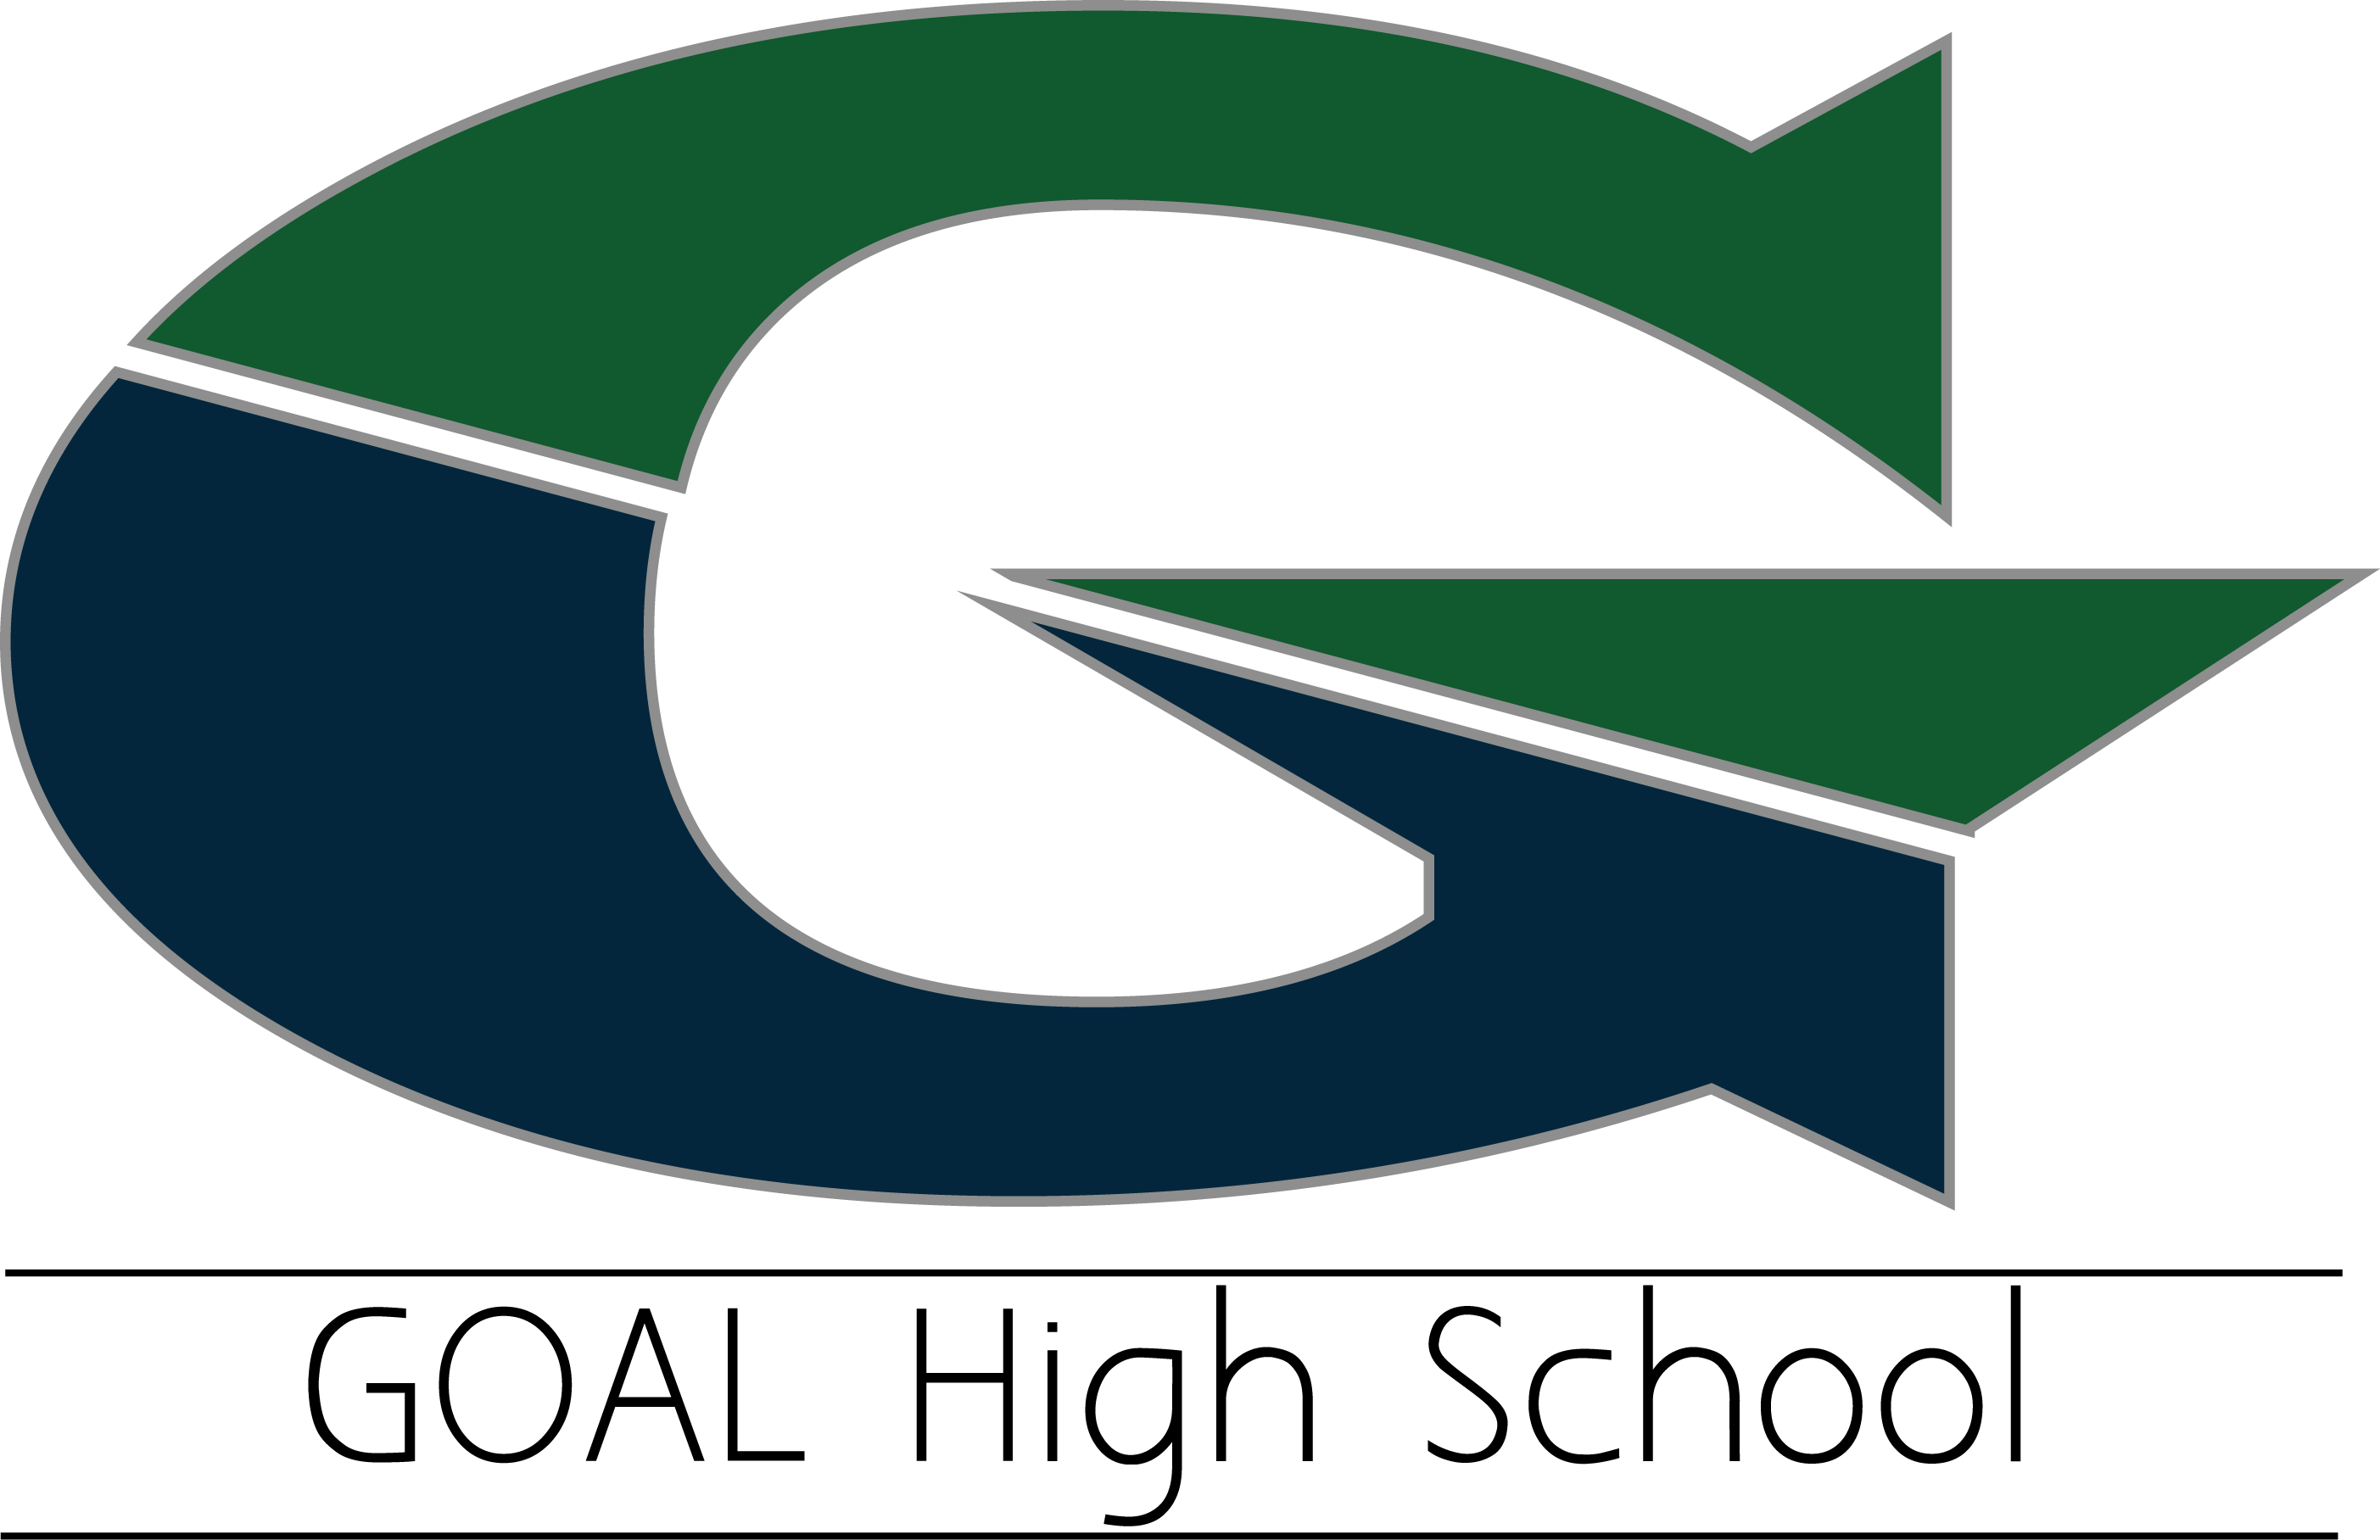 Goal.com Logo - Home - GOAL Academy High School